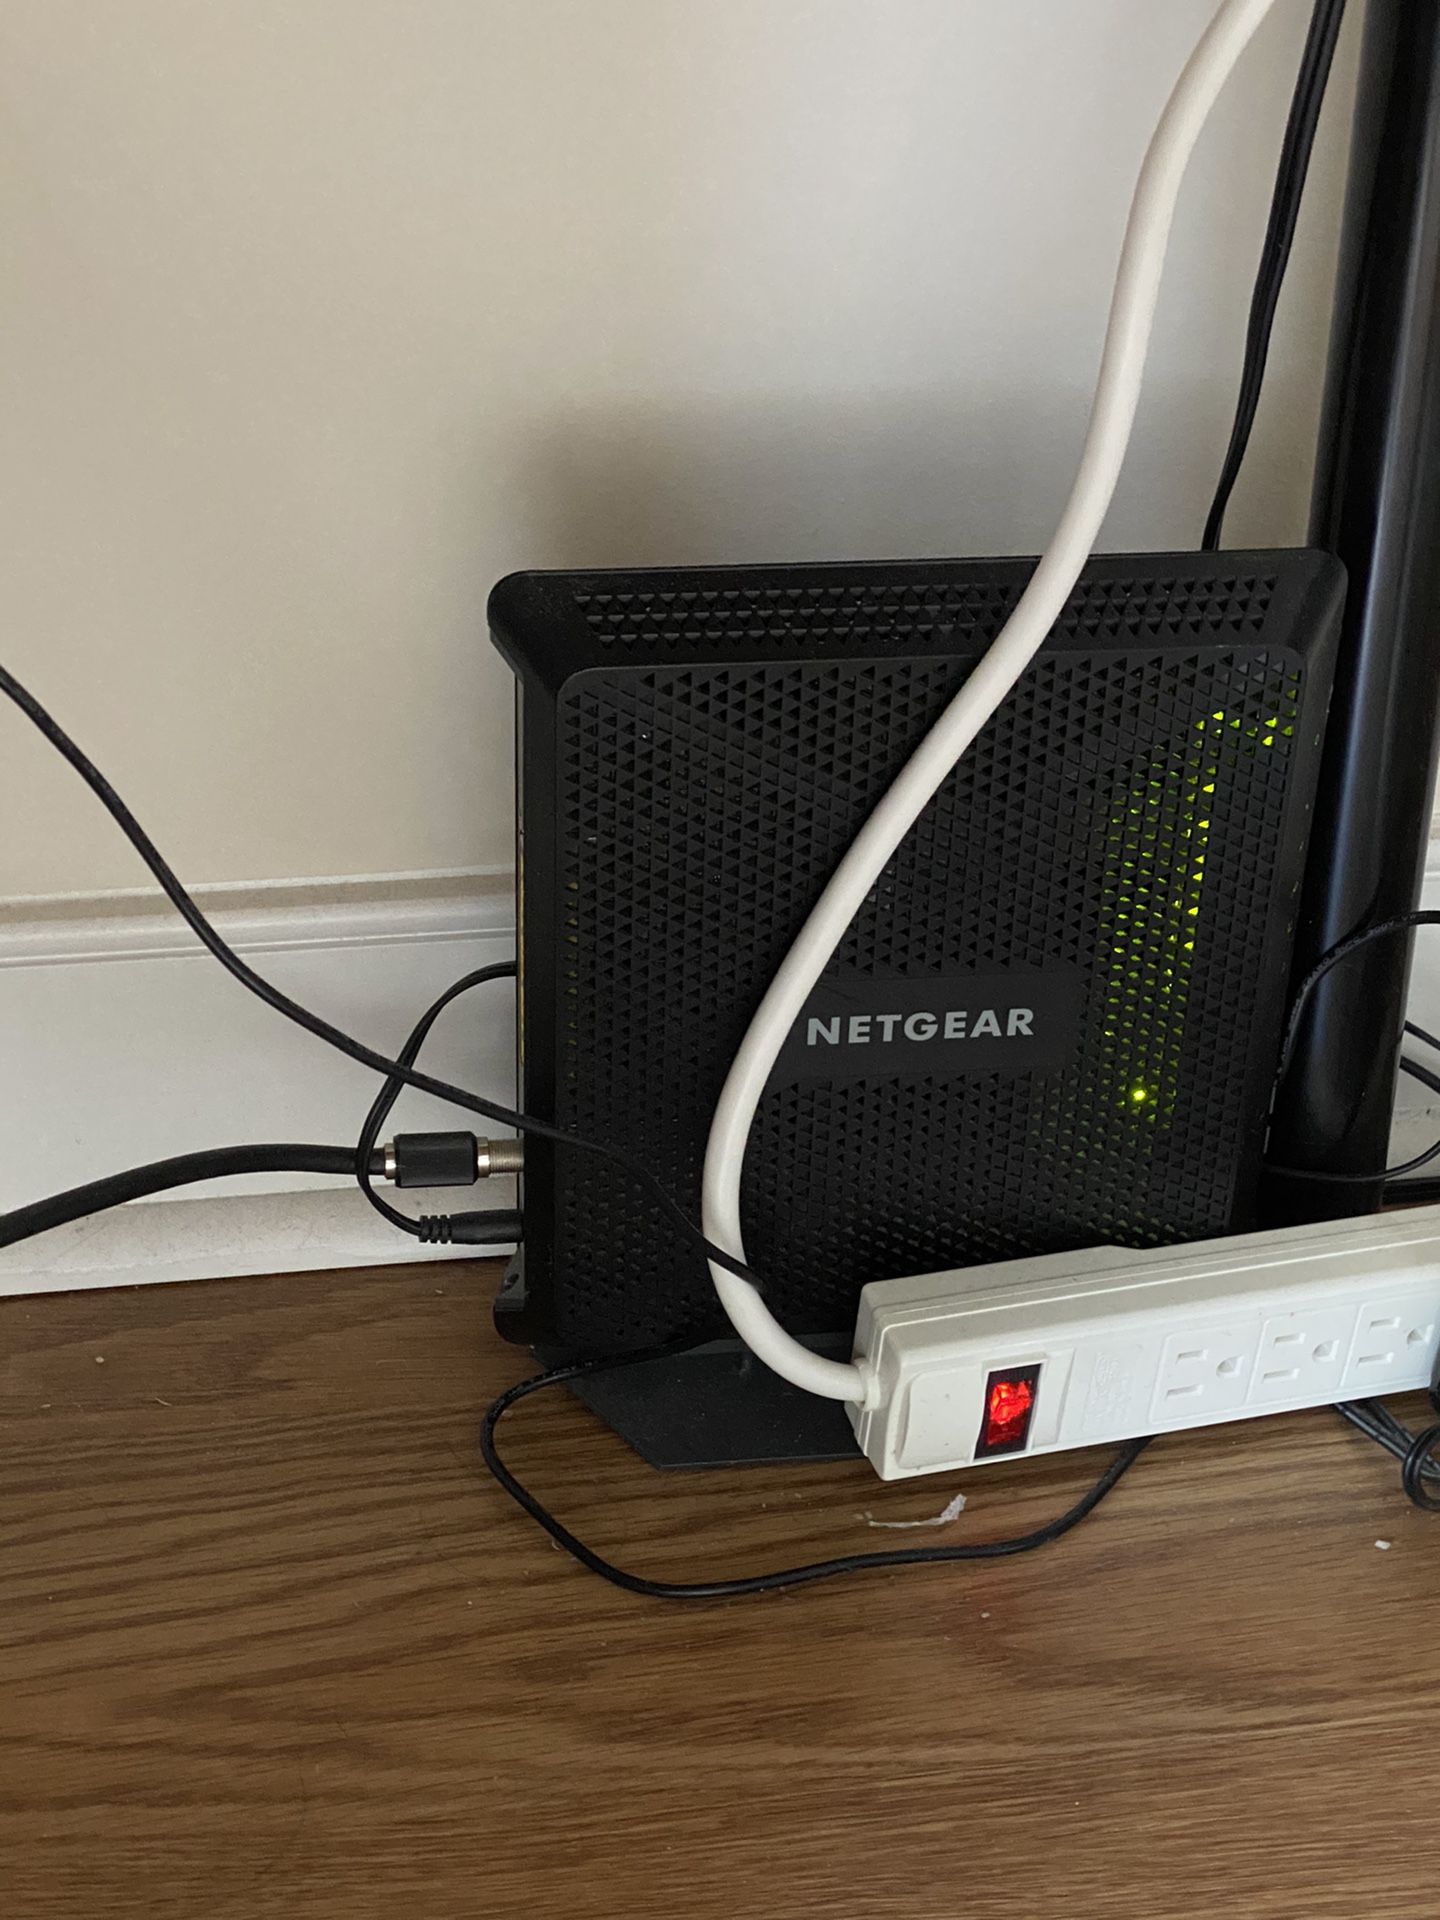 Netgear Modem Router Combo